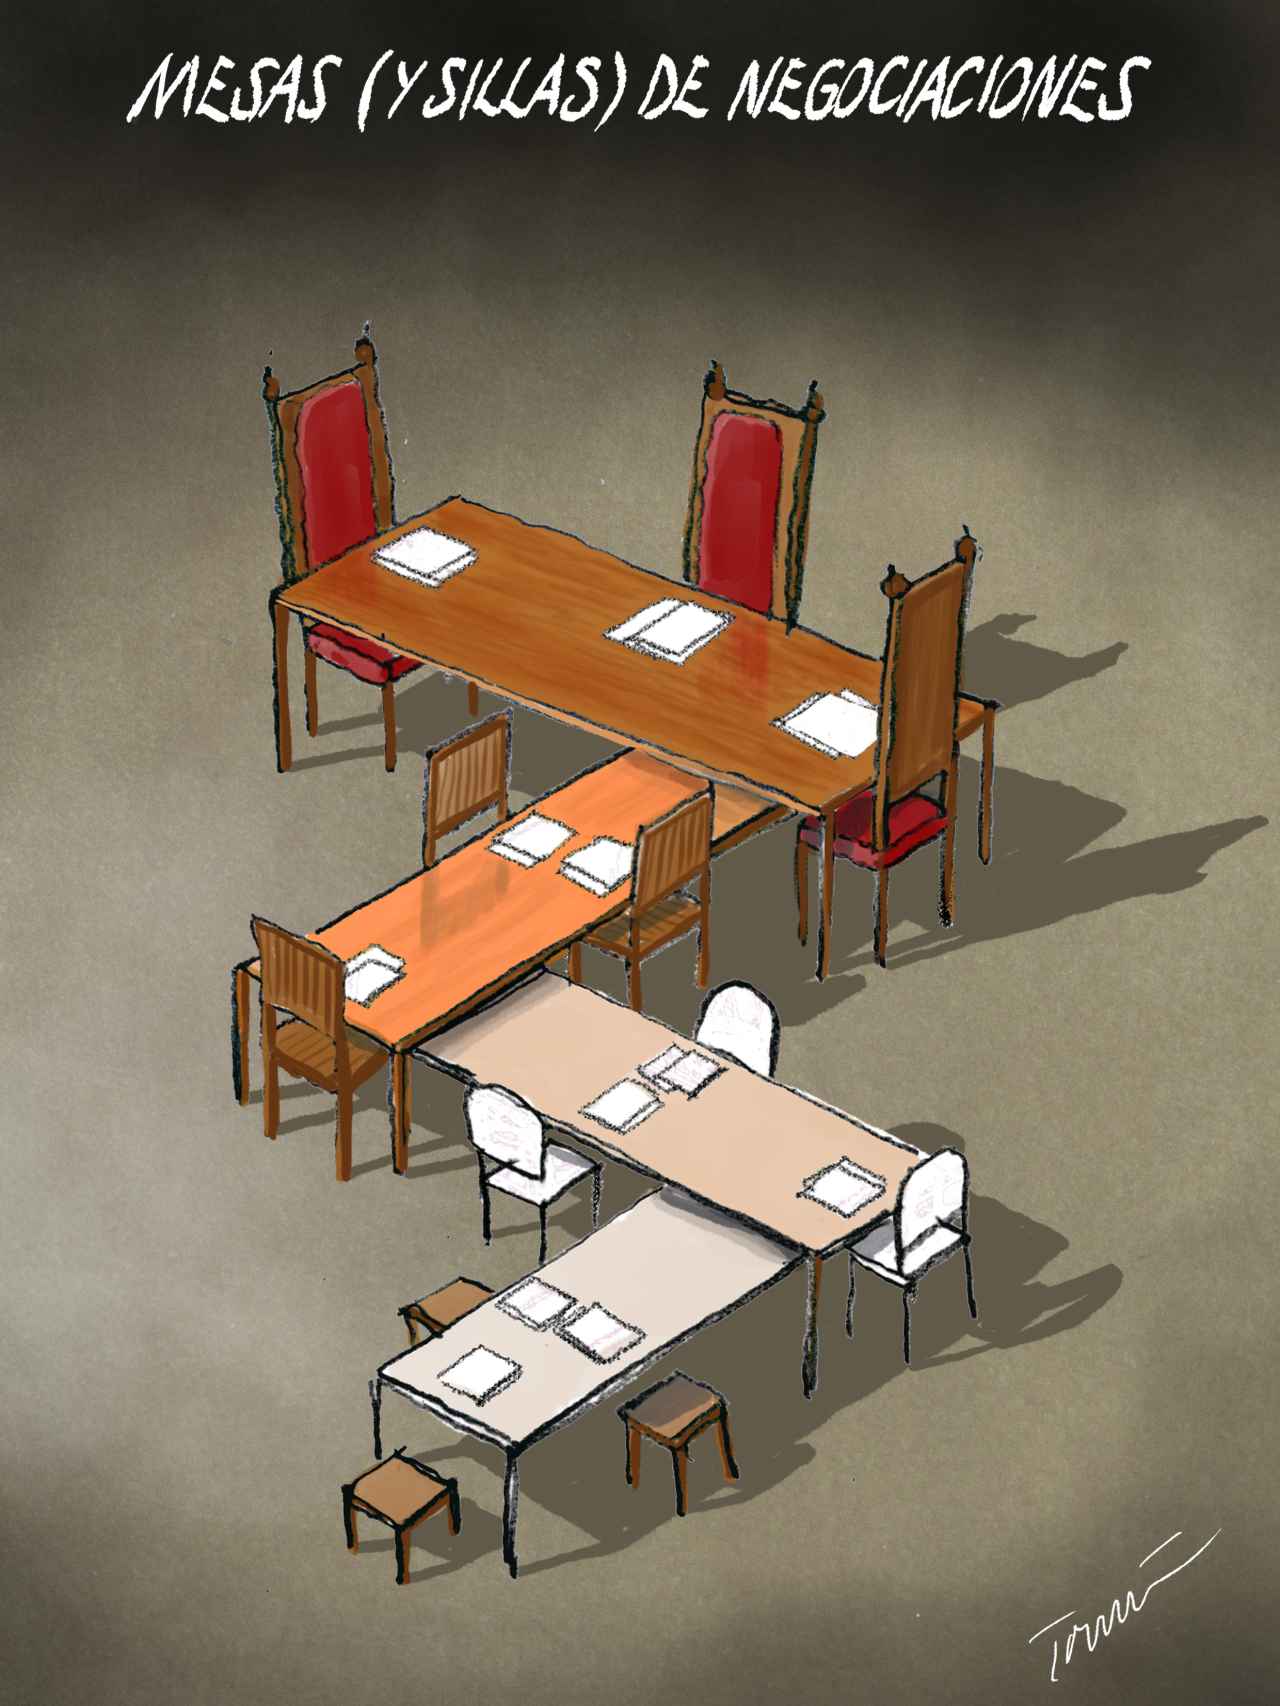 Mesas (y sillas) de negociaciones